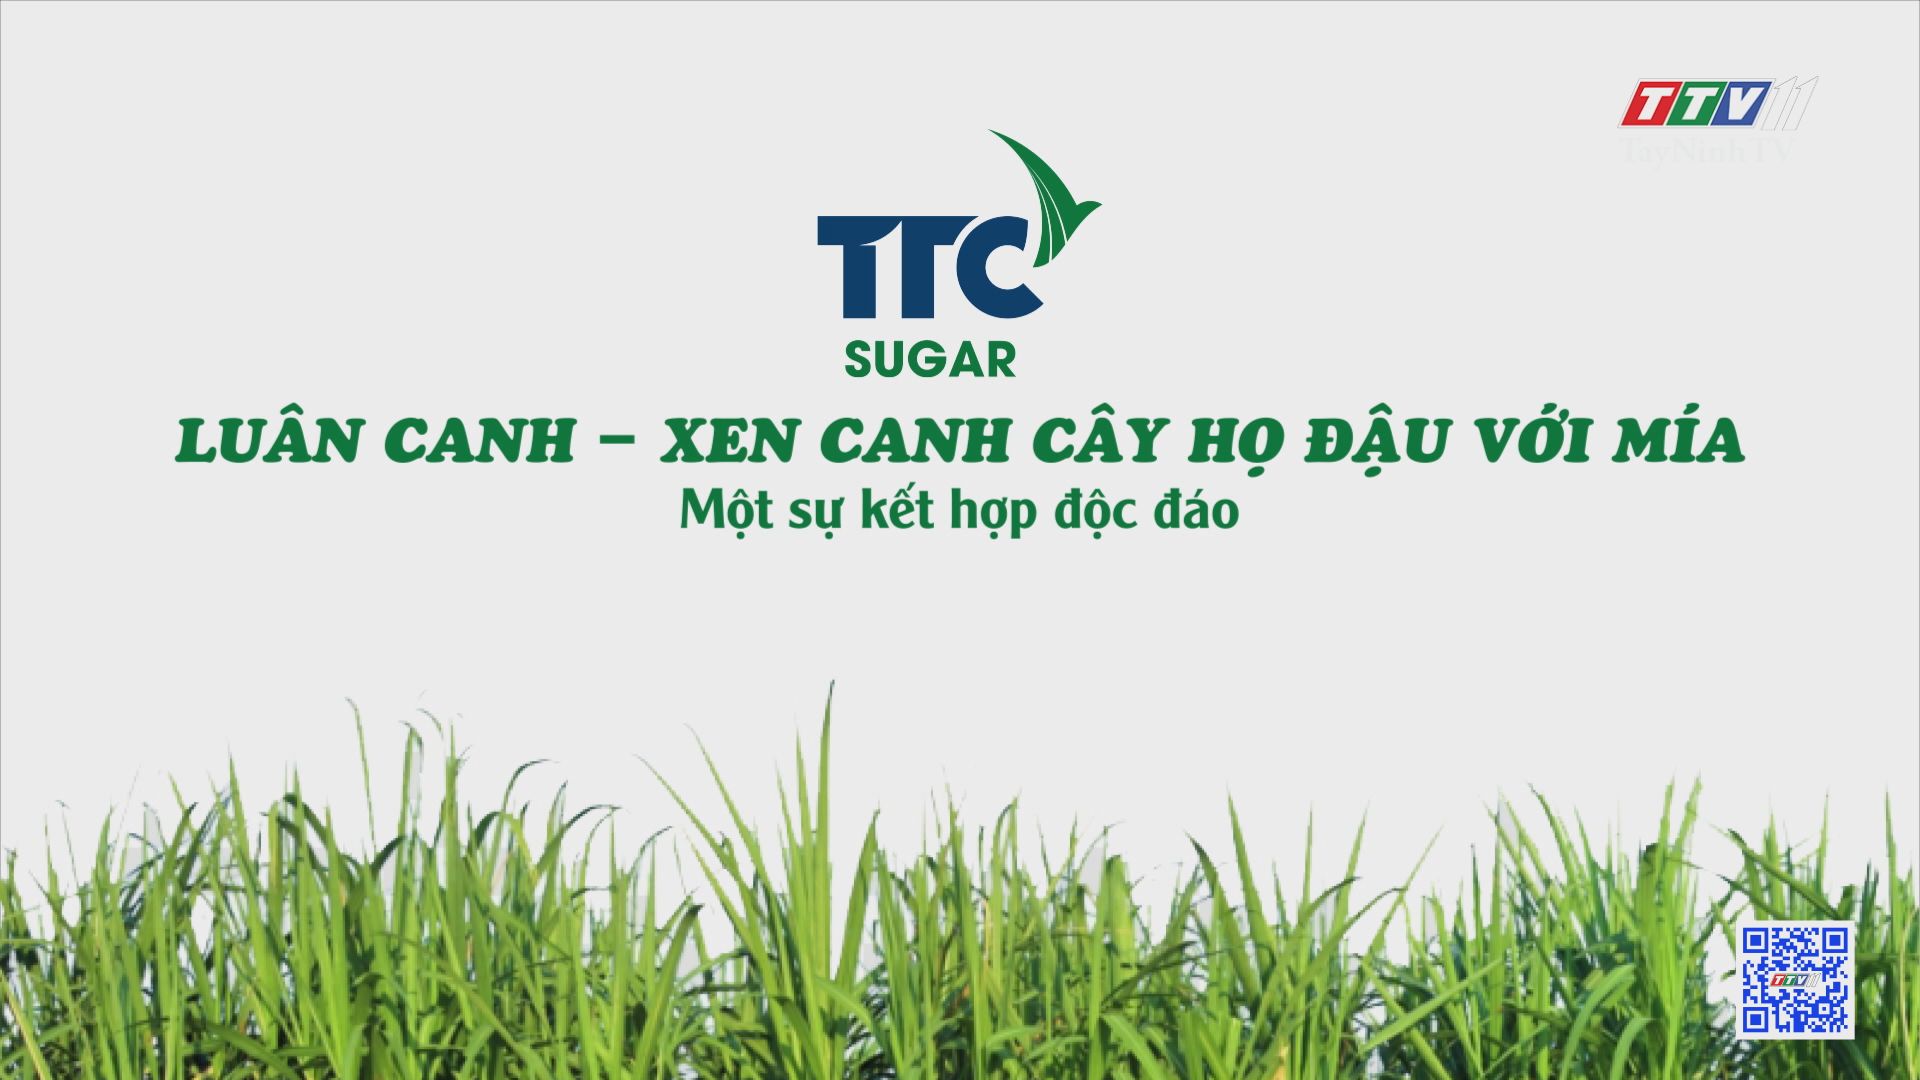 Luân canh - Xen canh cây họ đậu với mía, một sự kết hợp độc đáo | Cây mía Việt | TayNinhTV